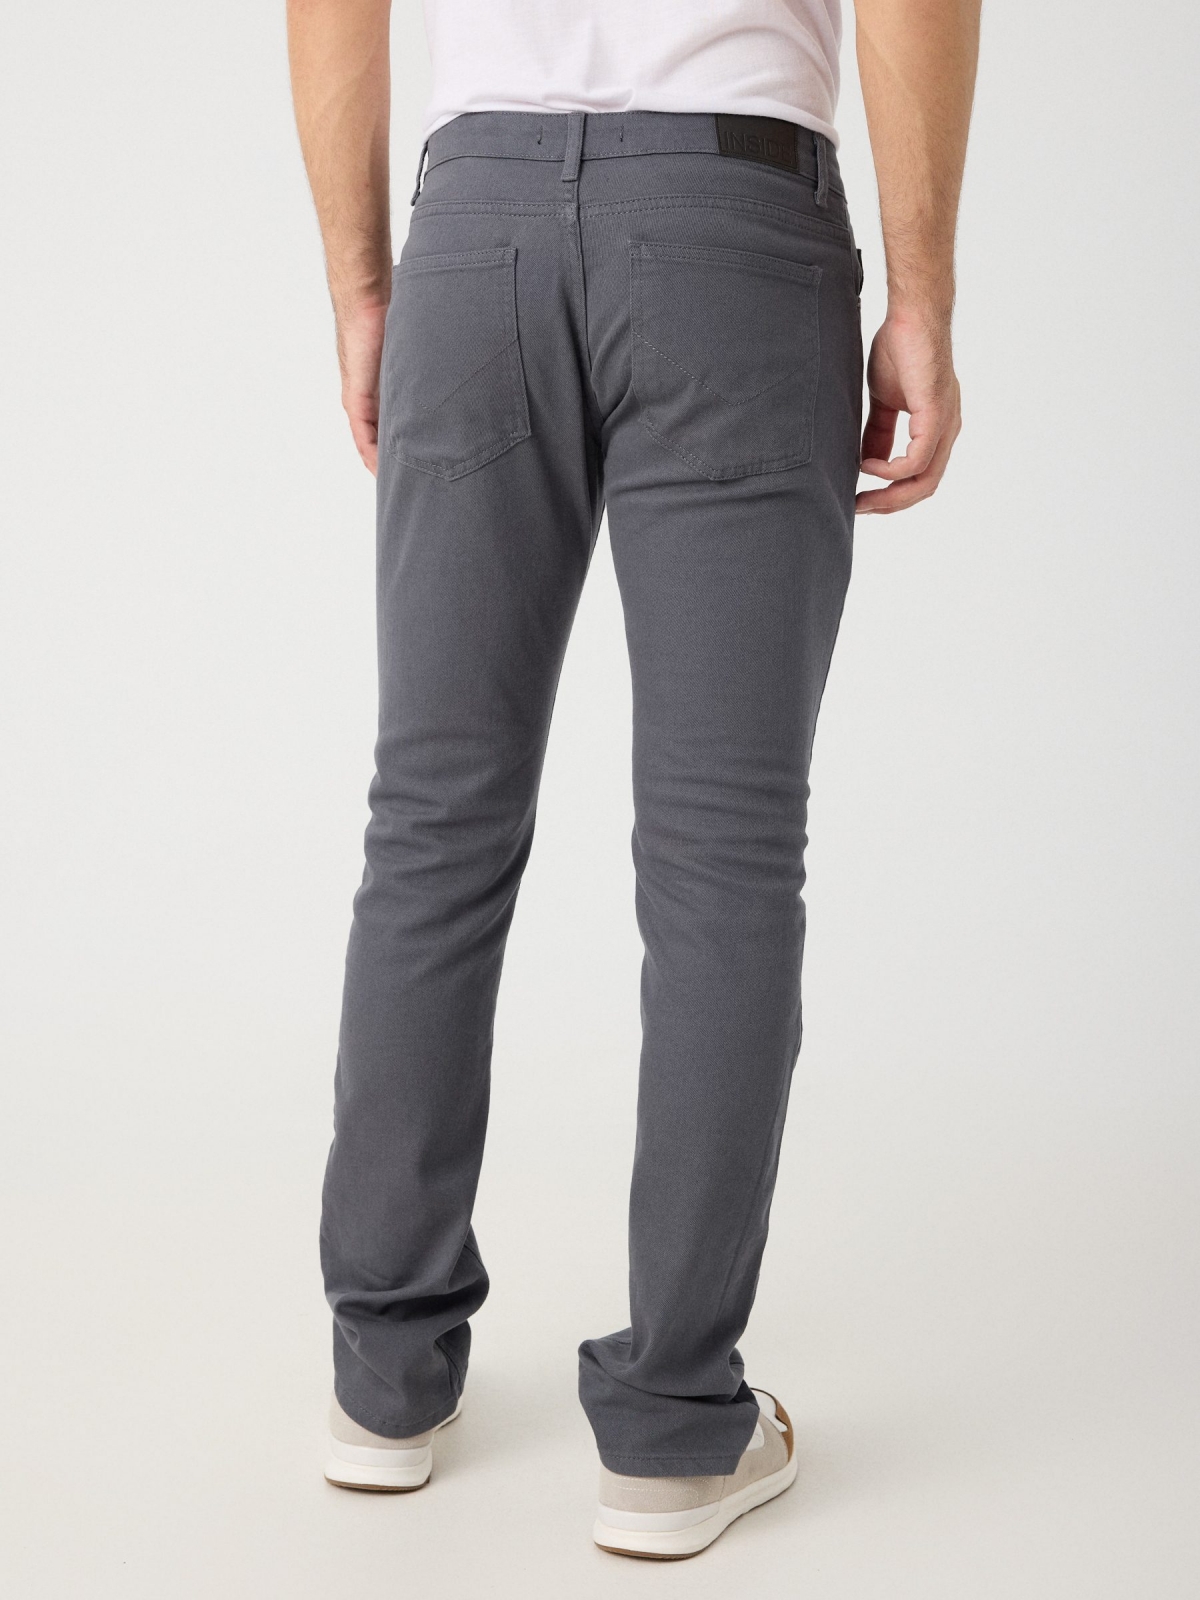 Pantalón regular cinco bolsillos gris vista media trasera